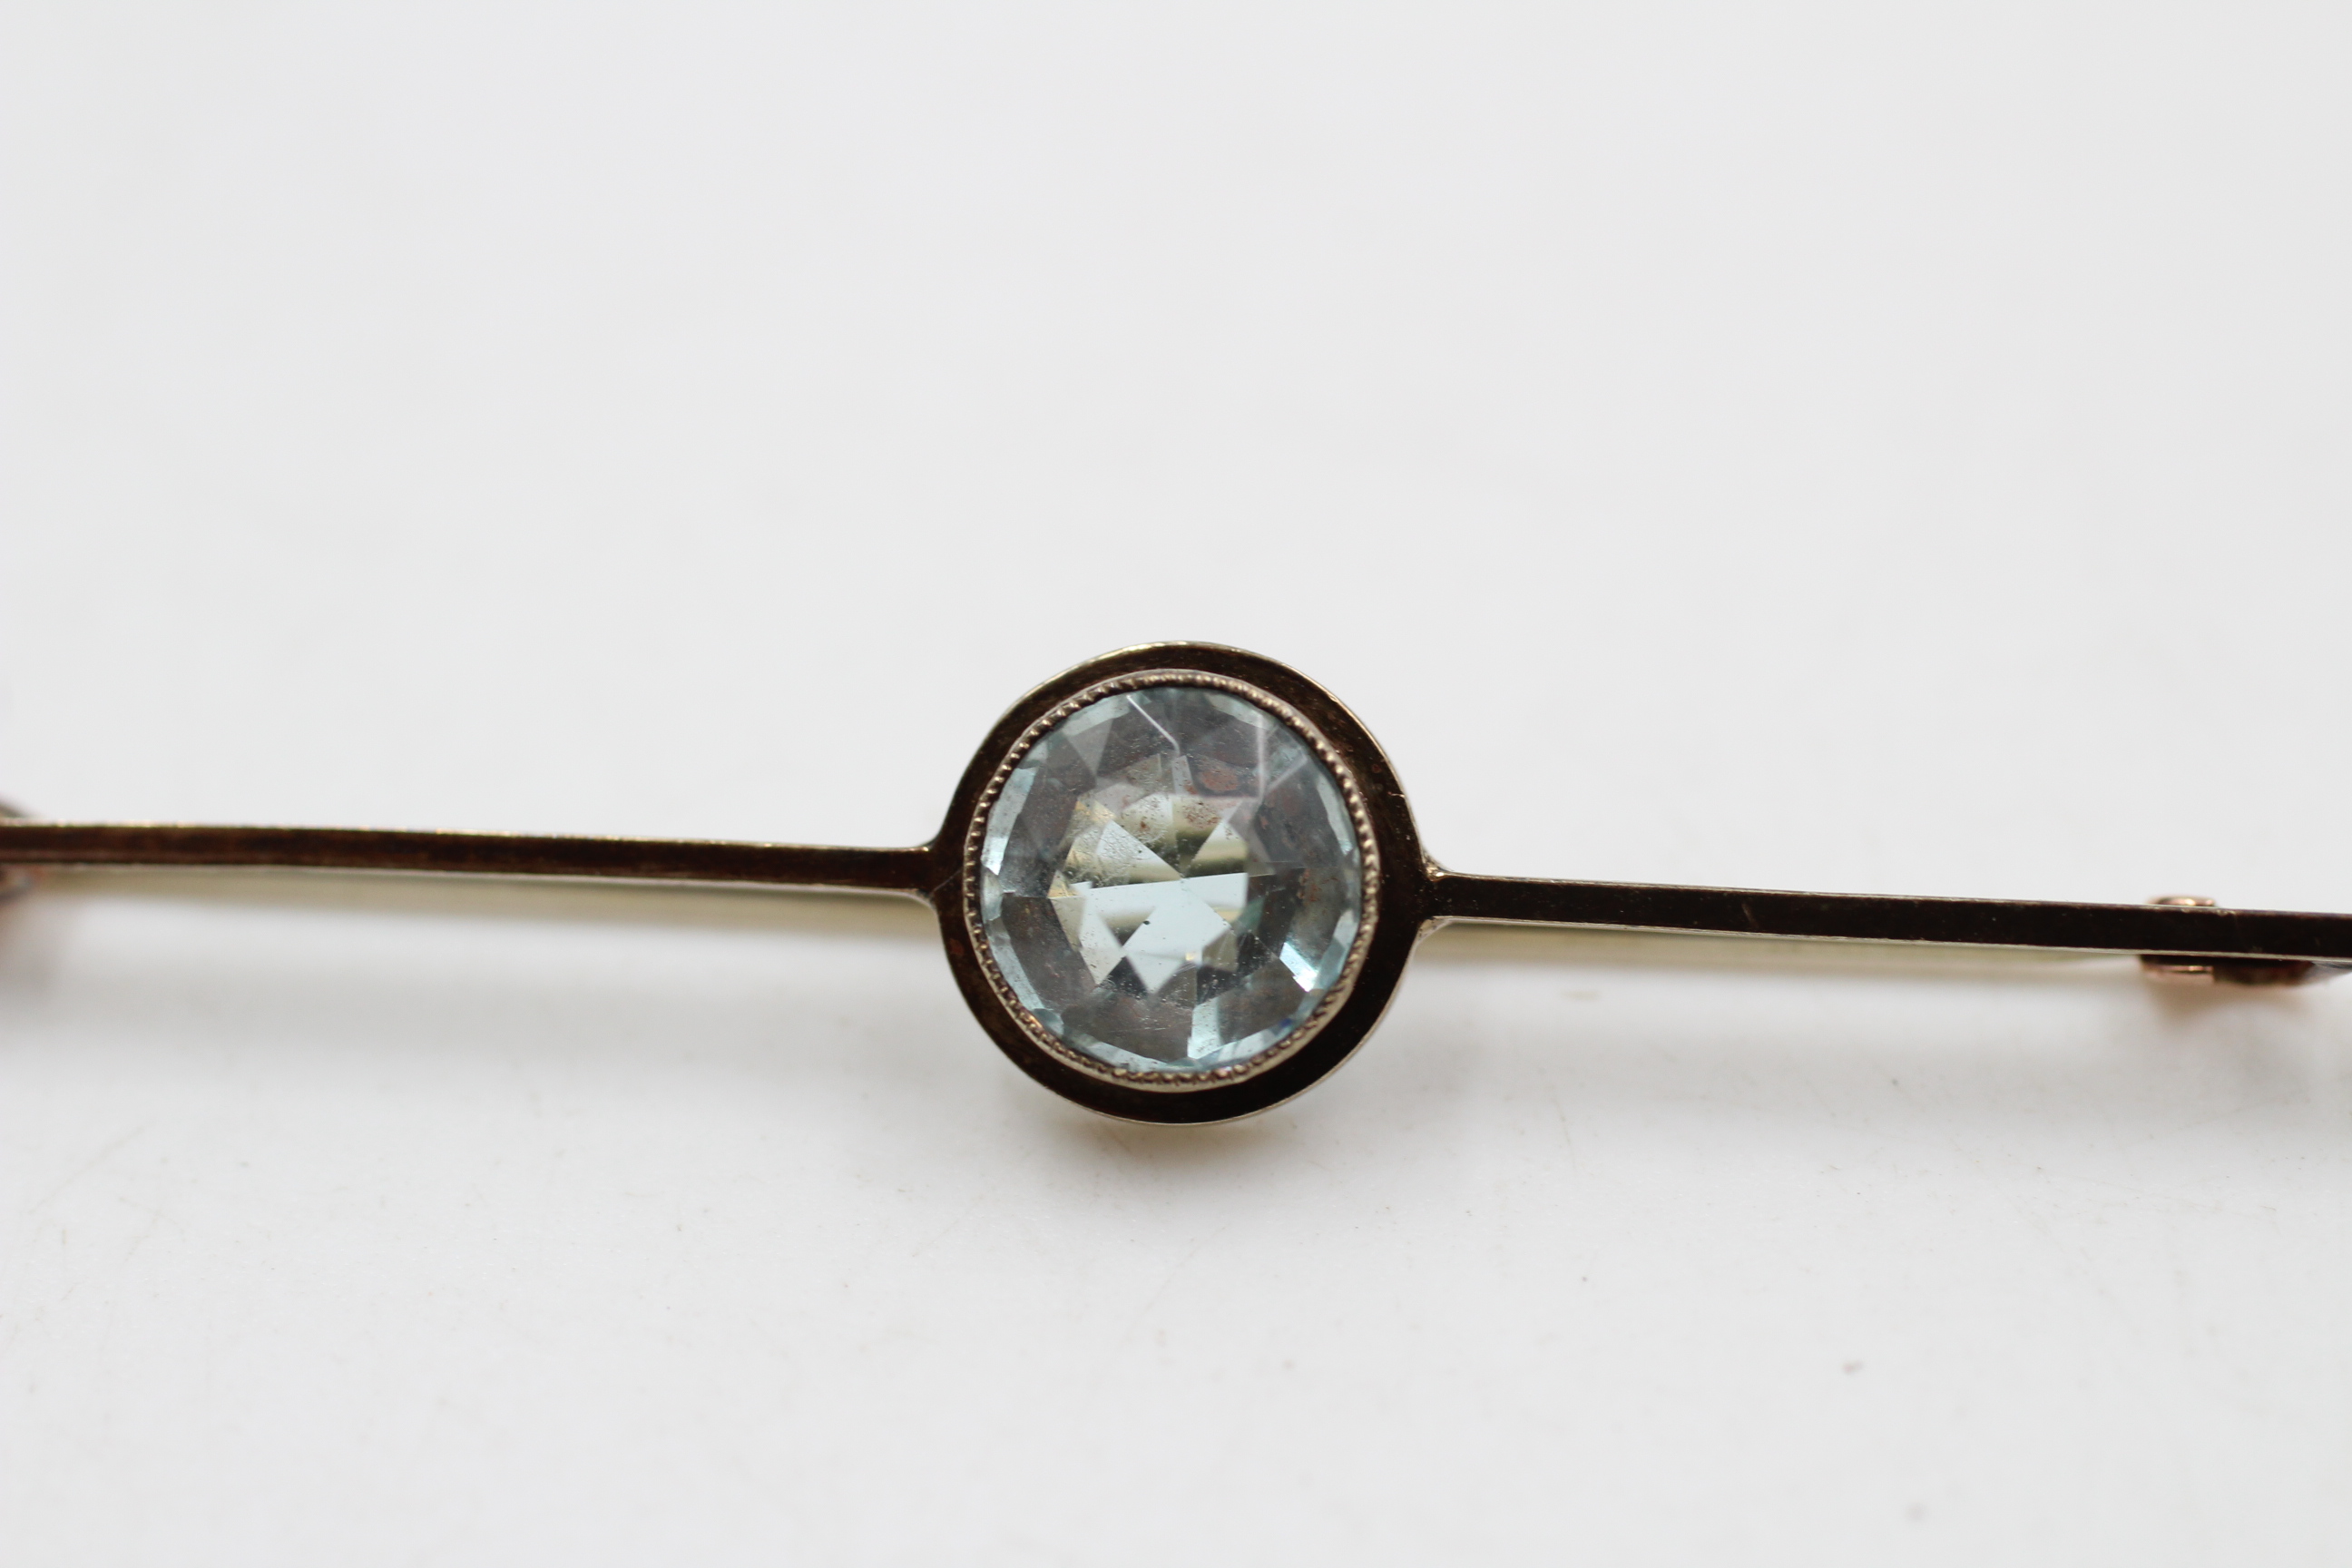 9ct gold vintage blue gemstone paste bar brooch (3.2g) - Image 2 of 4